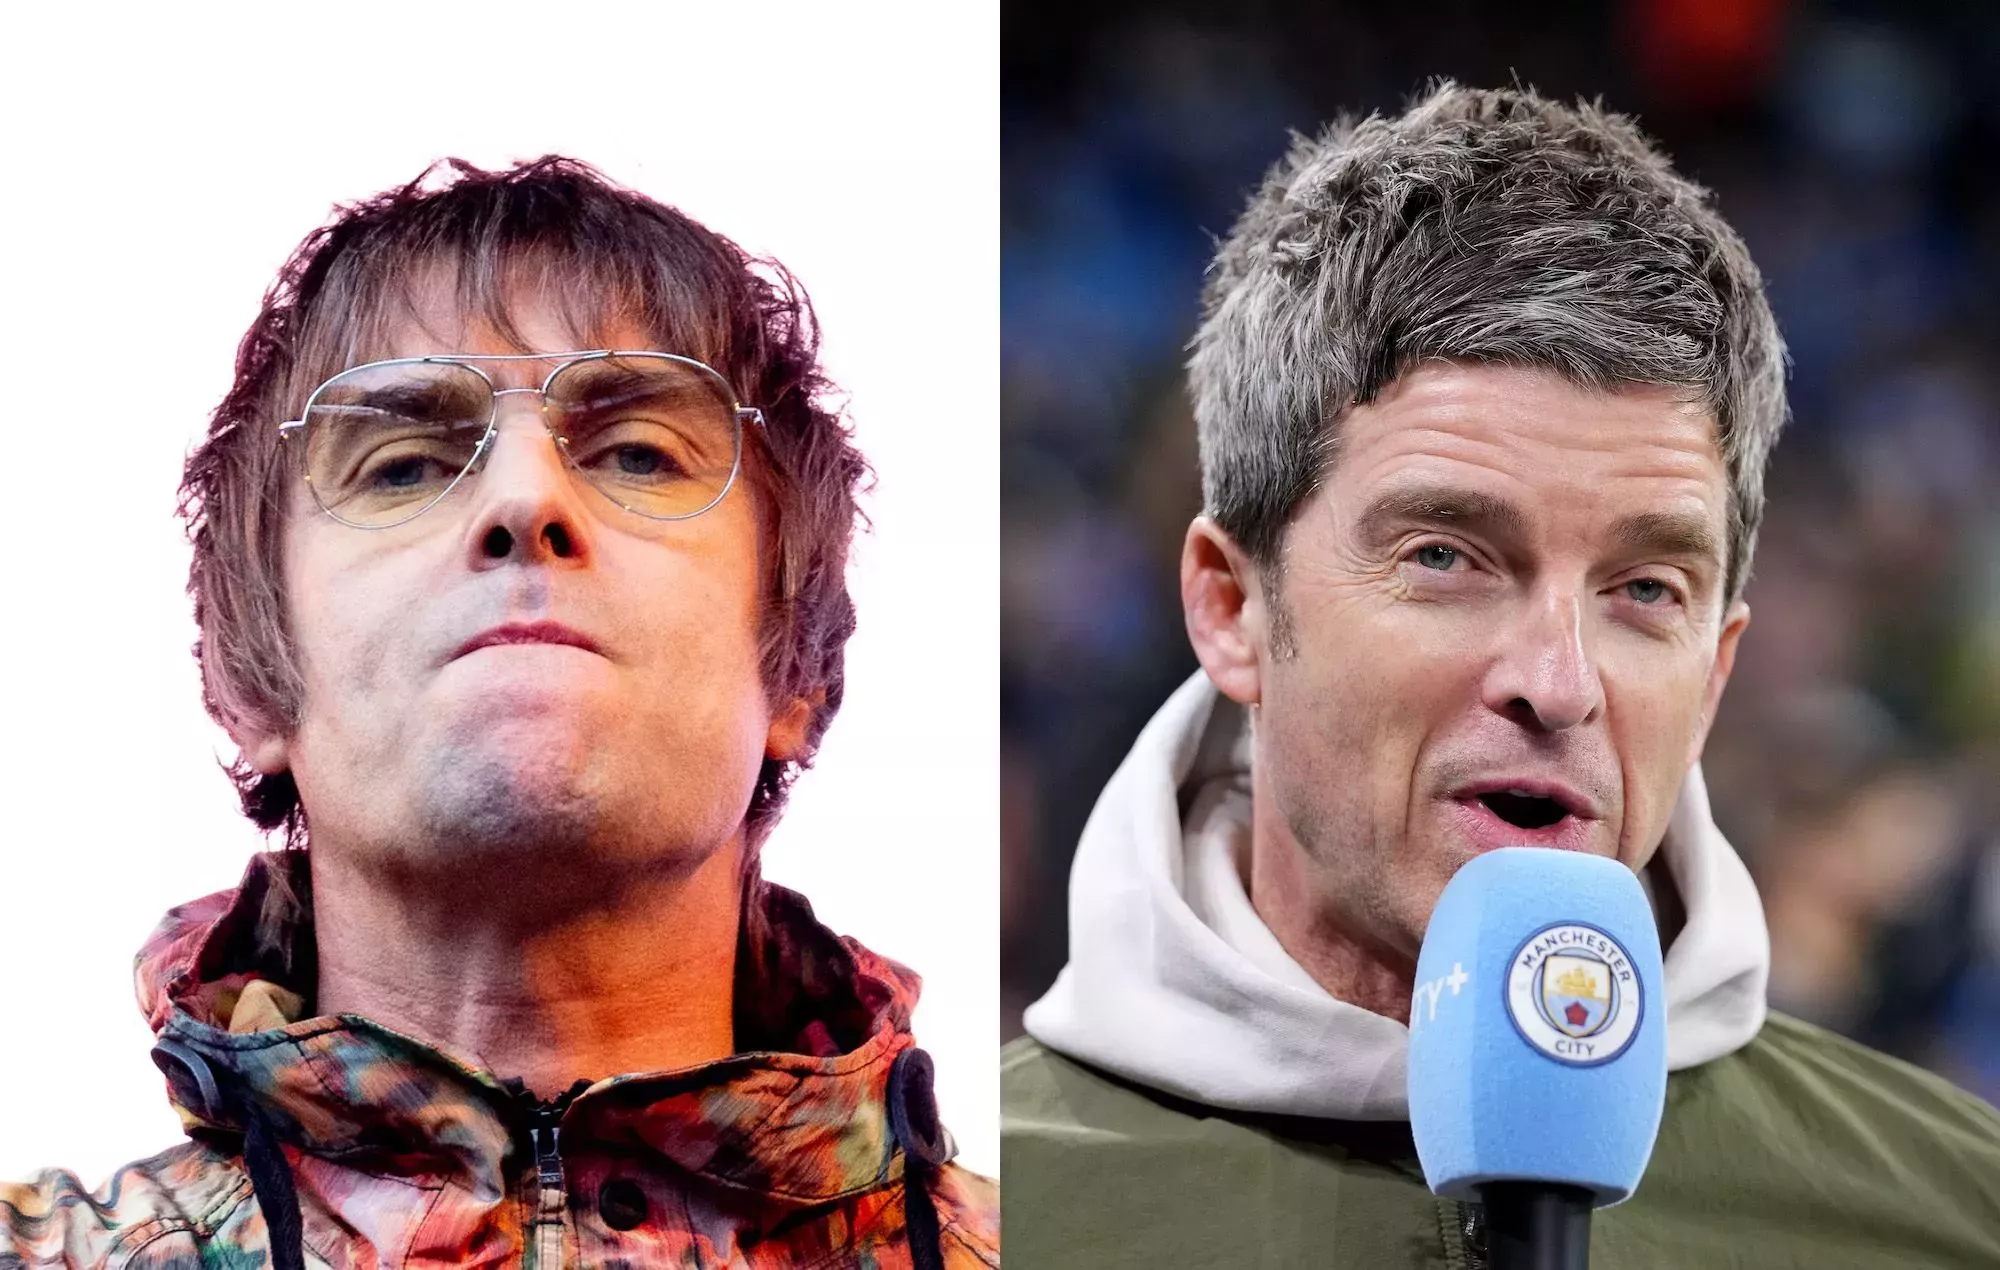 Los fans de Oasis piden a Liam Gallagher que cumpla su promesa de reunión tras ganar el Manchester City la Liga de Campeones